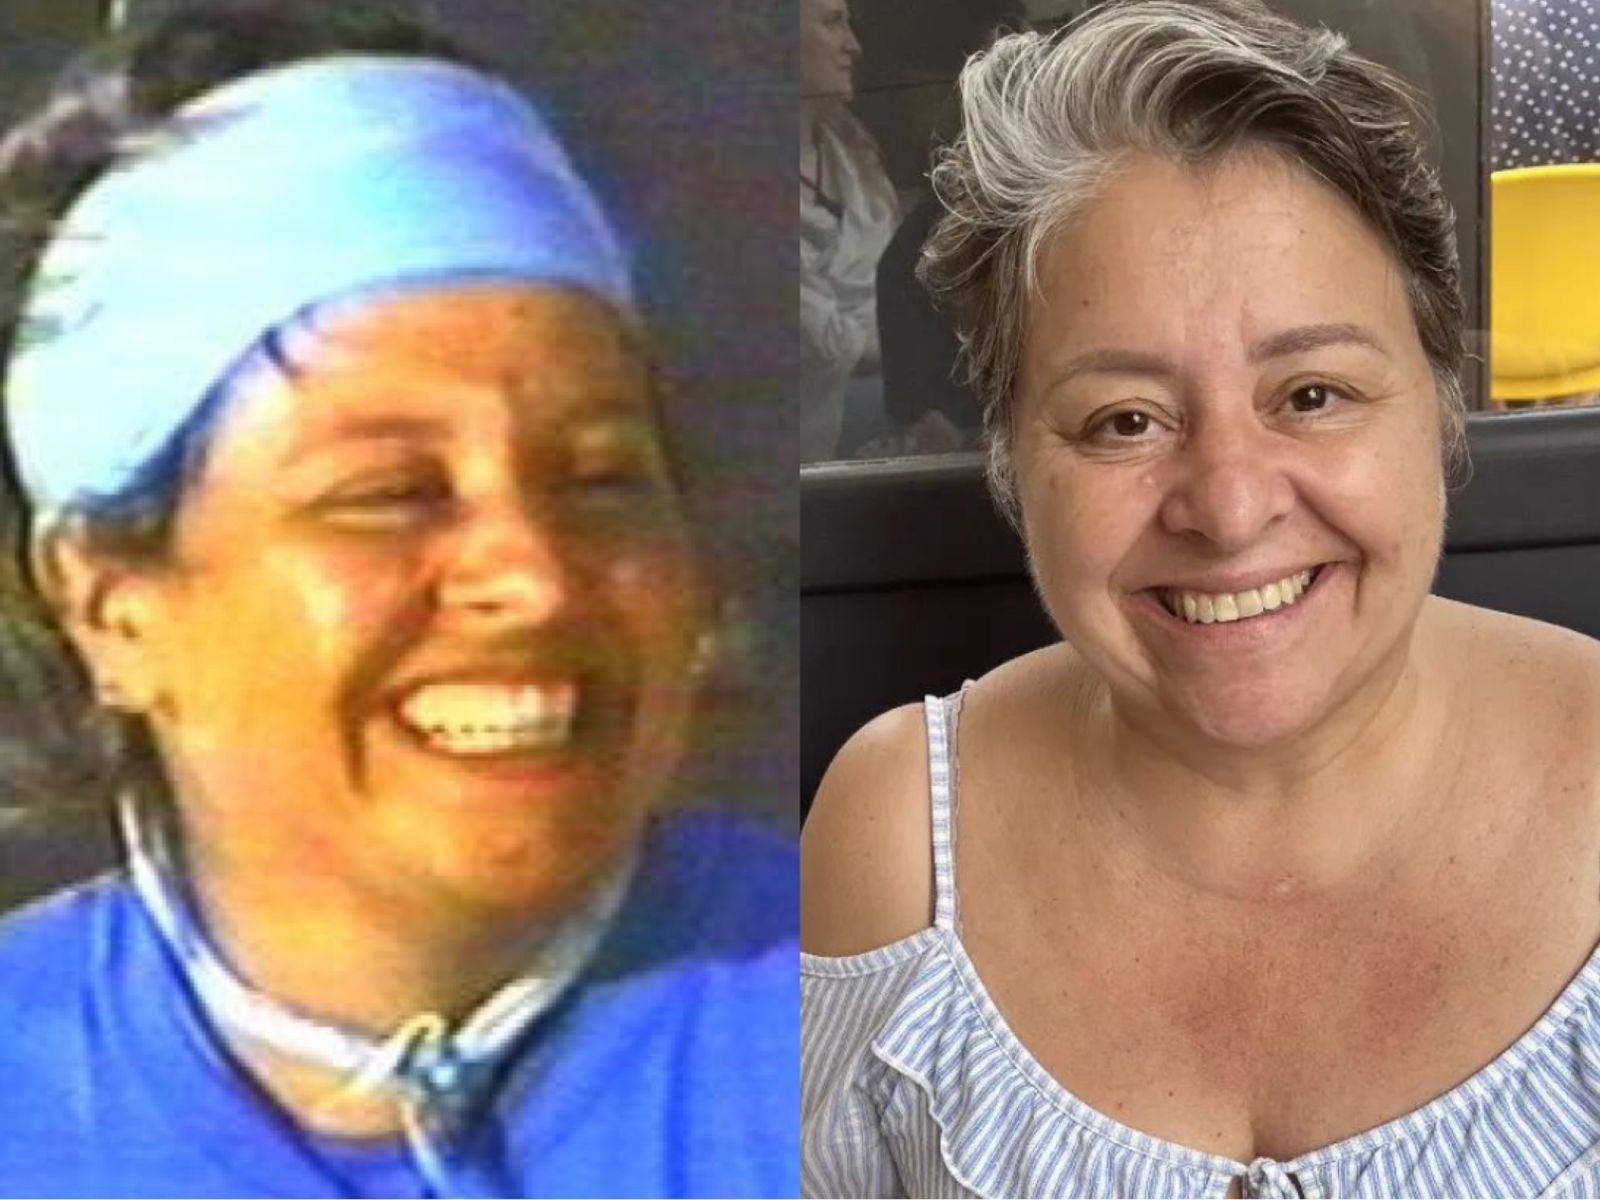 Elaine Melo venceu a primeira edição do "No limite", em 2000. Na época, ela tinha 34 anos e trabalhava como cabeleireira. Hoje, aos 57, segue na profissão e morando em São Paulo — Foto: Reprodução TV Globo/Instagram